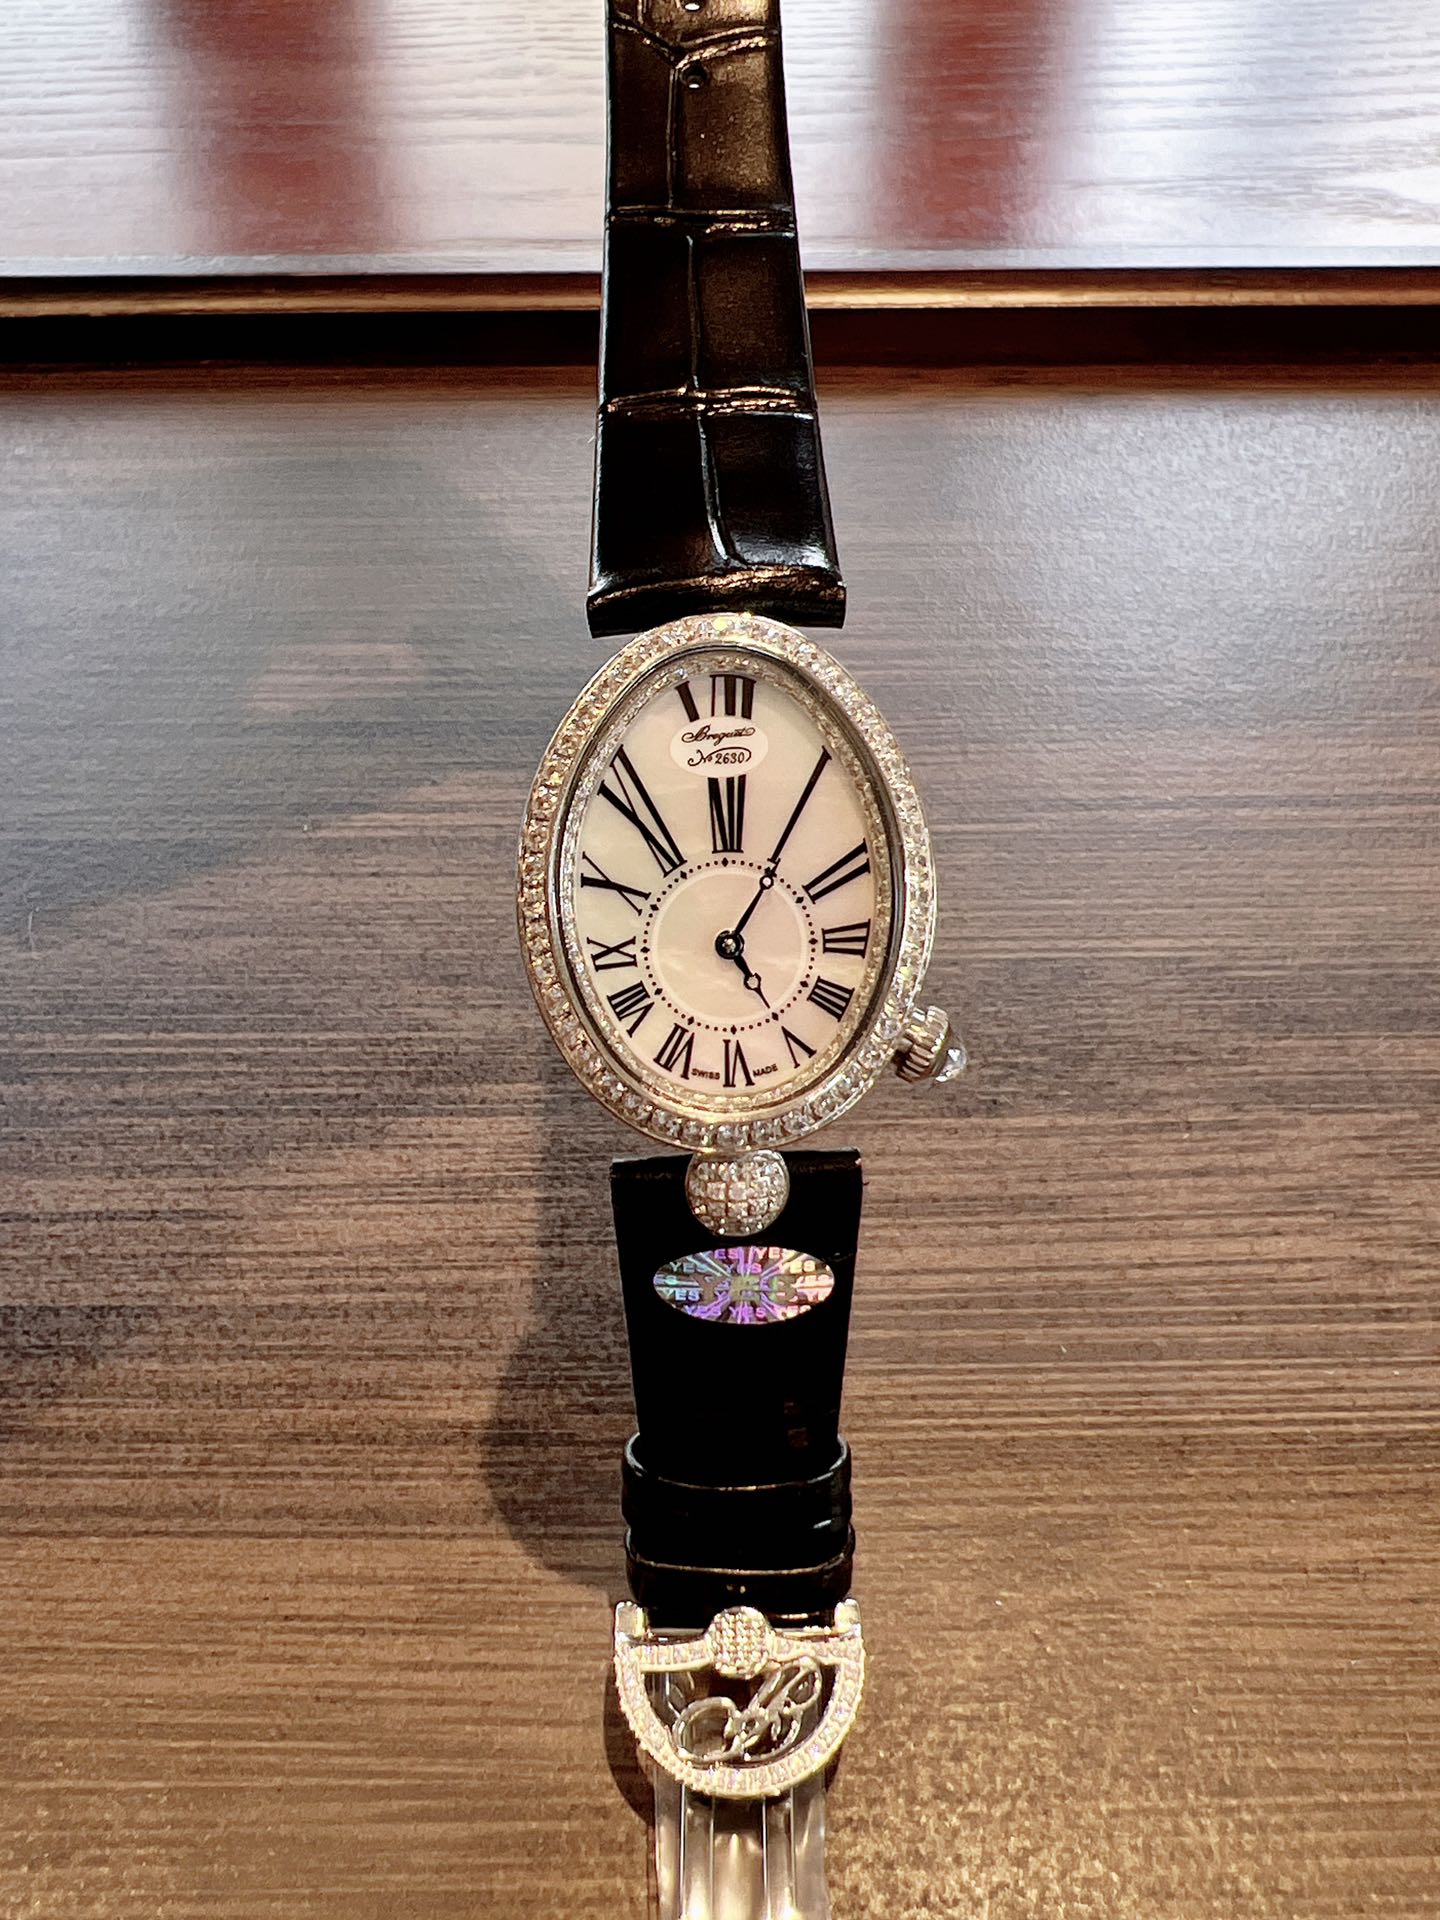 宝玑那不勒斯王后系列REINEDENAPLES[色]高品质女士瑞士石英机芯女表腕表[色]设计灵感正是来自